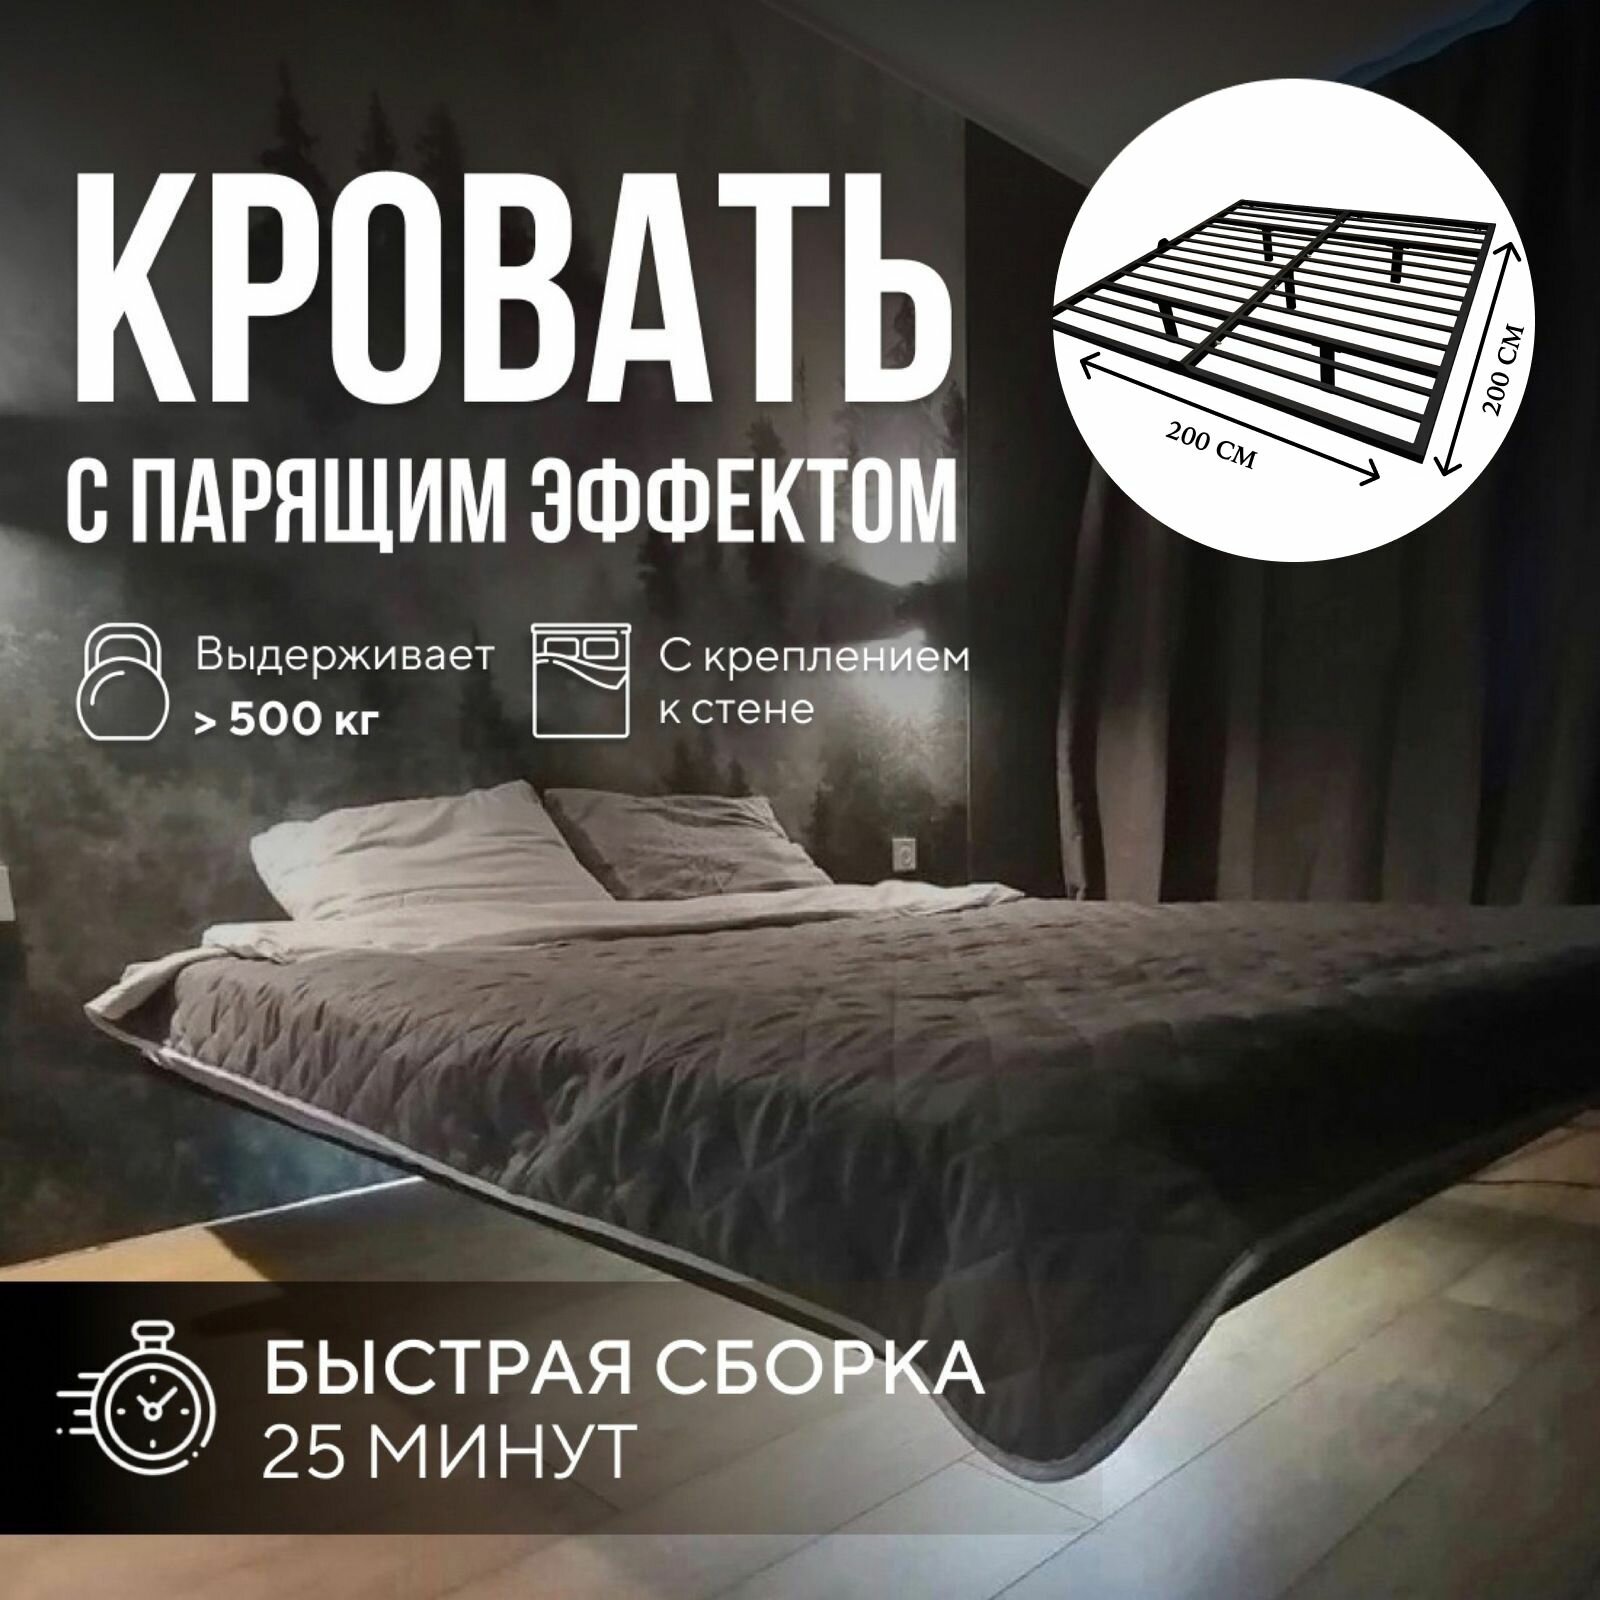 Парящая двуспальная кровать 200х200 см. Черный металлический каркас - основание с креплением к стене, 5 ножек